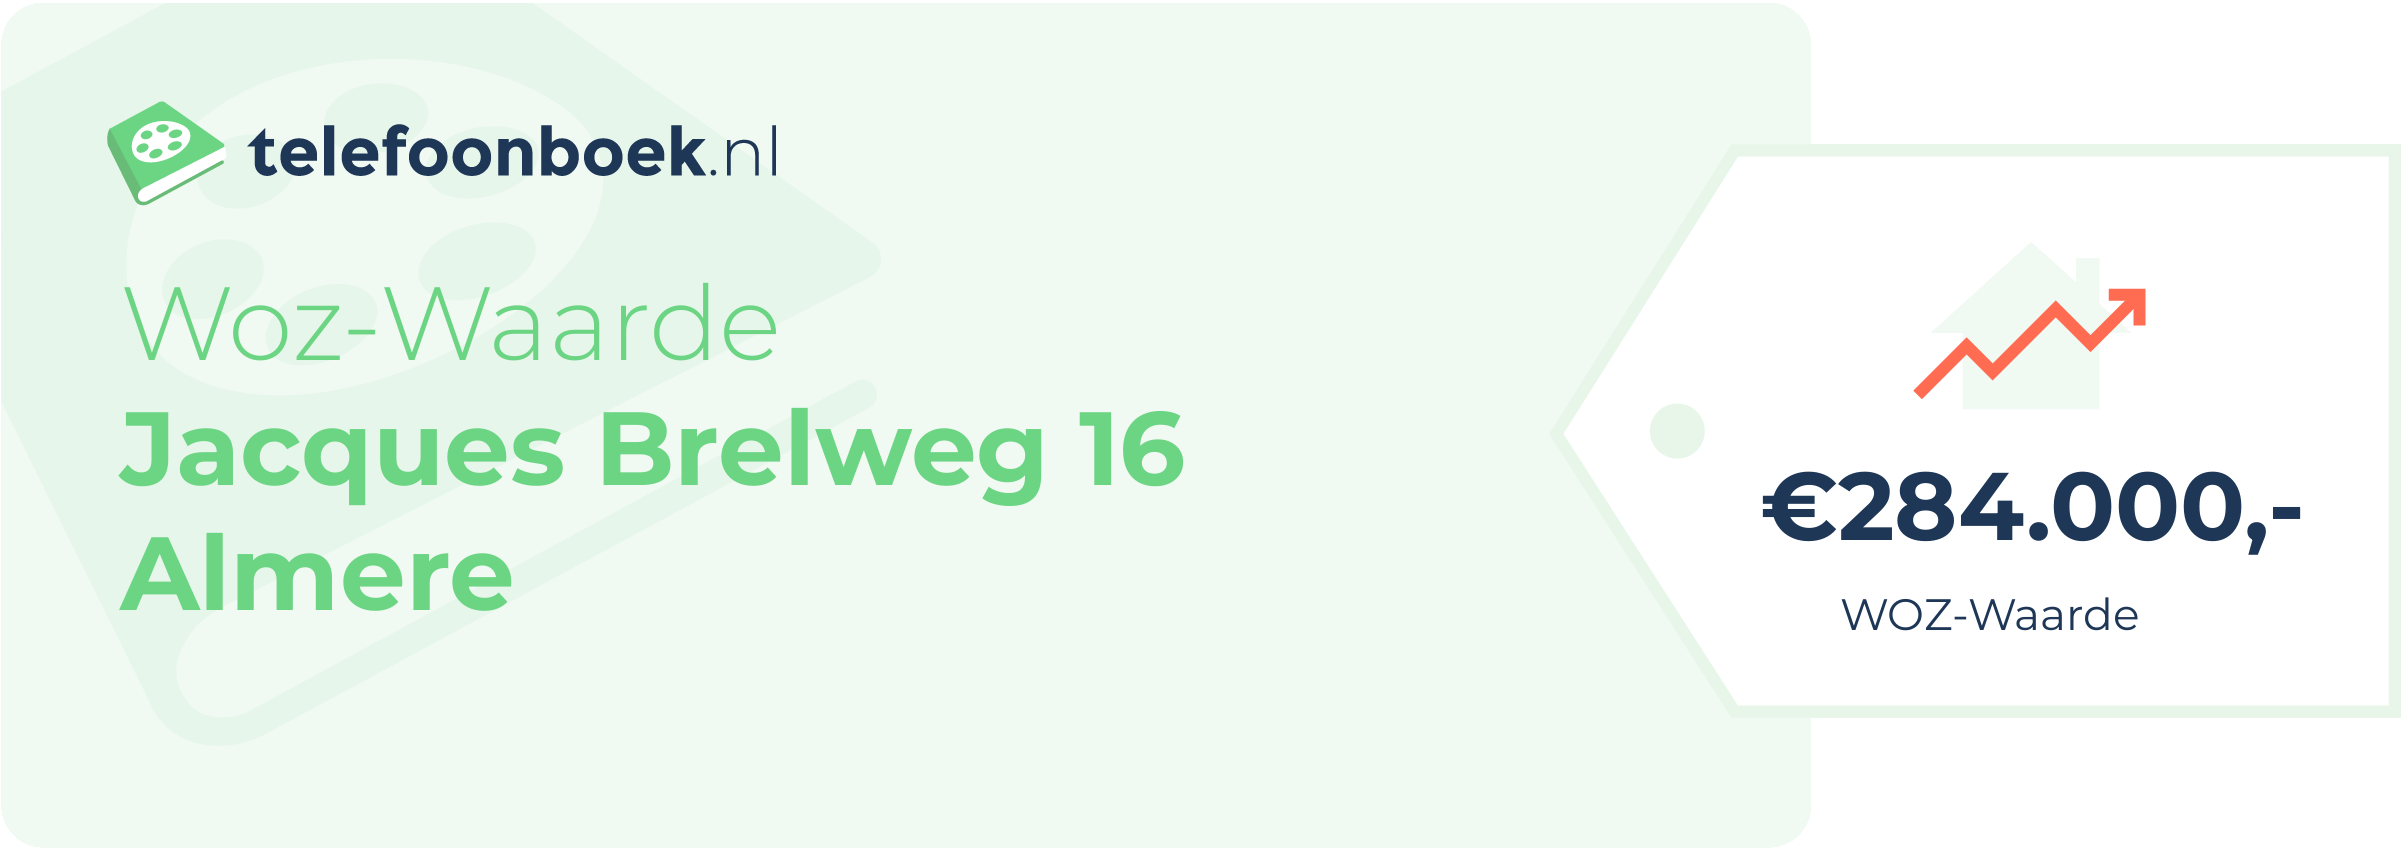 WOZ-waarde Jacques Brelweg 16 Almere